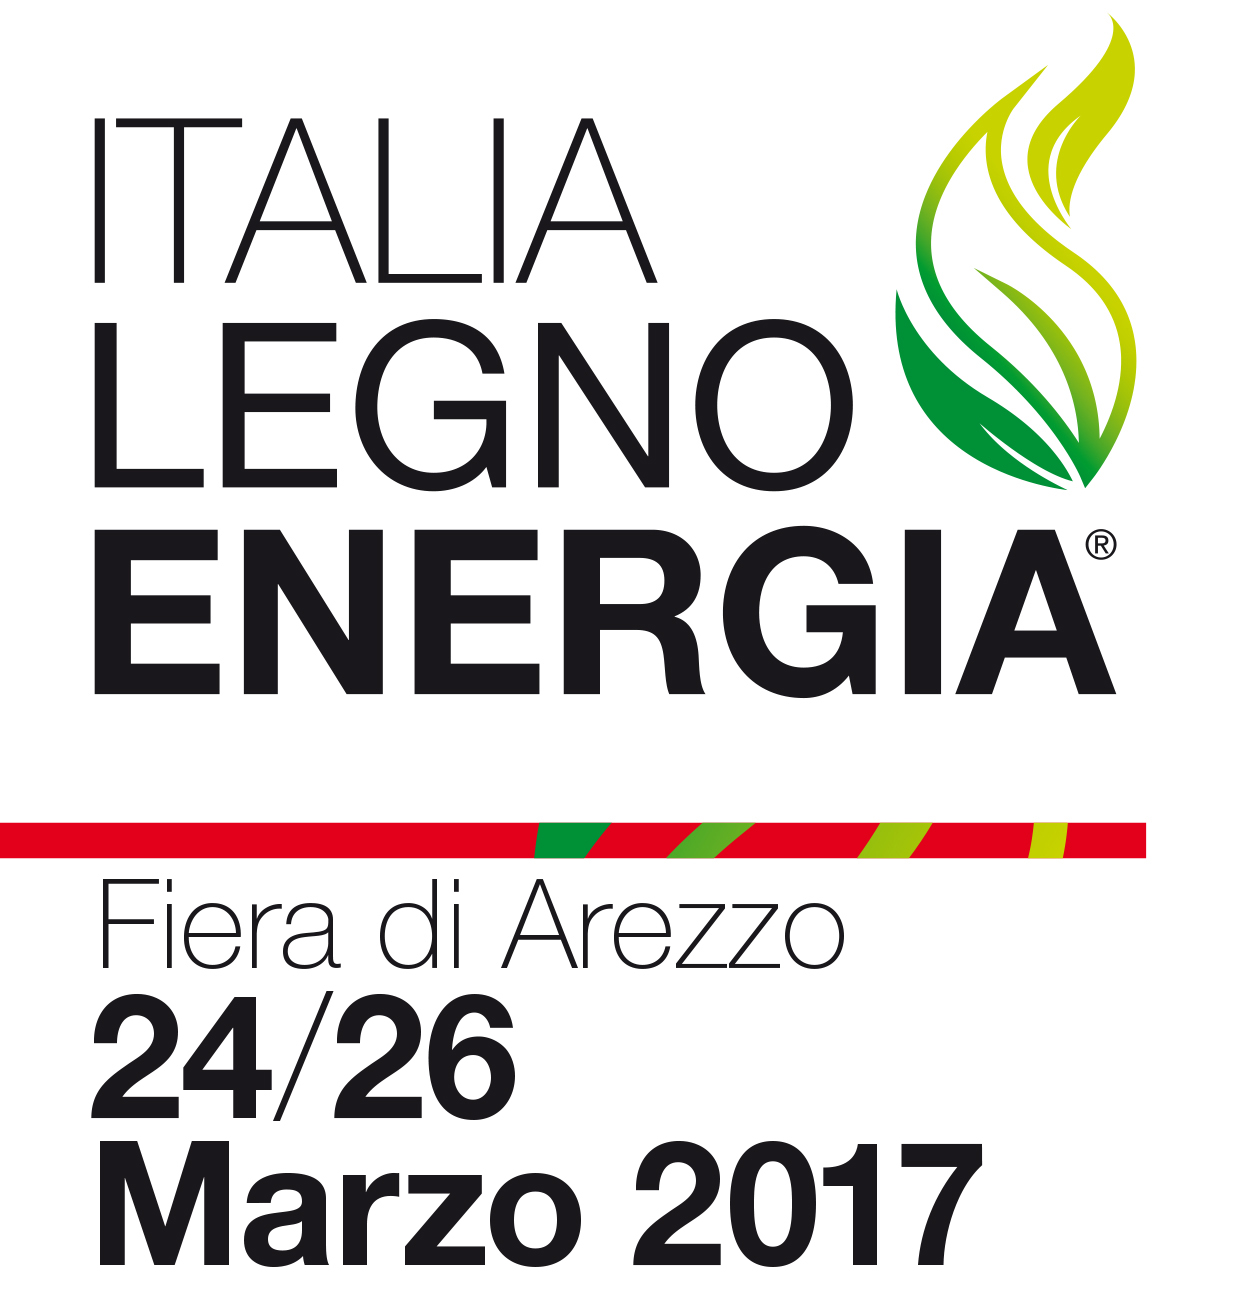 Italia Legno Energia